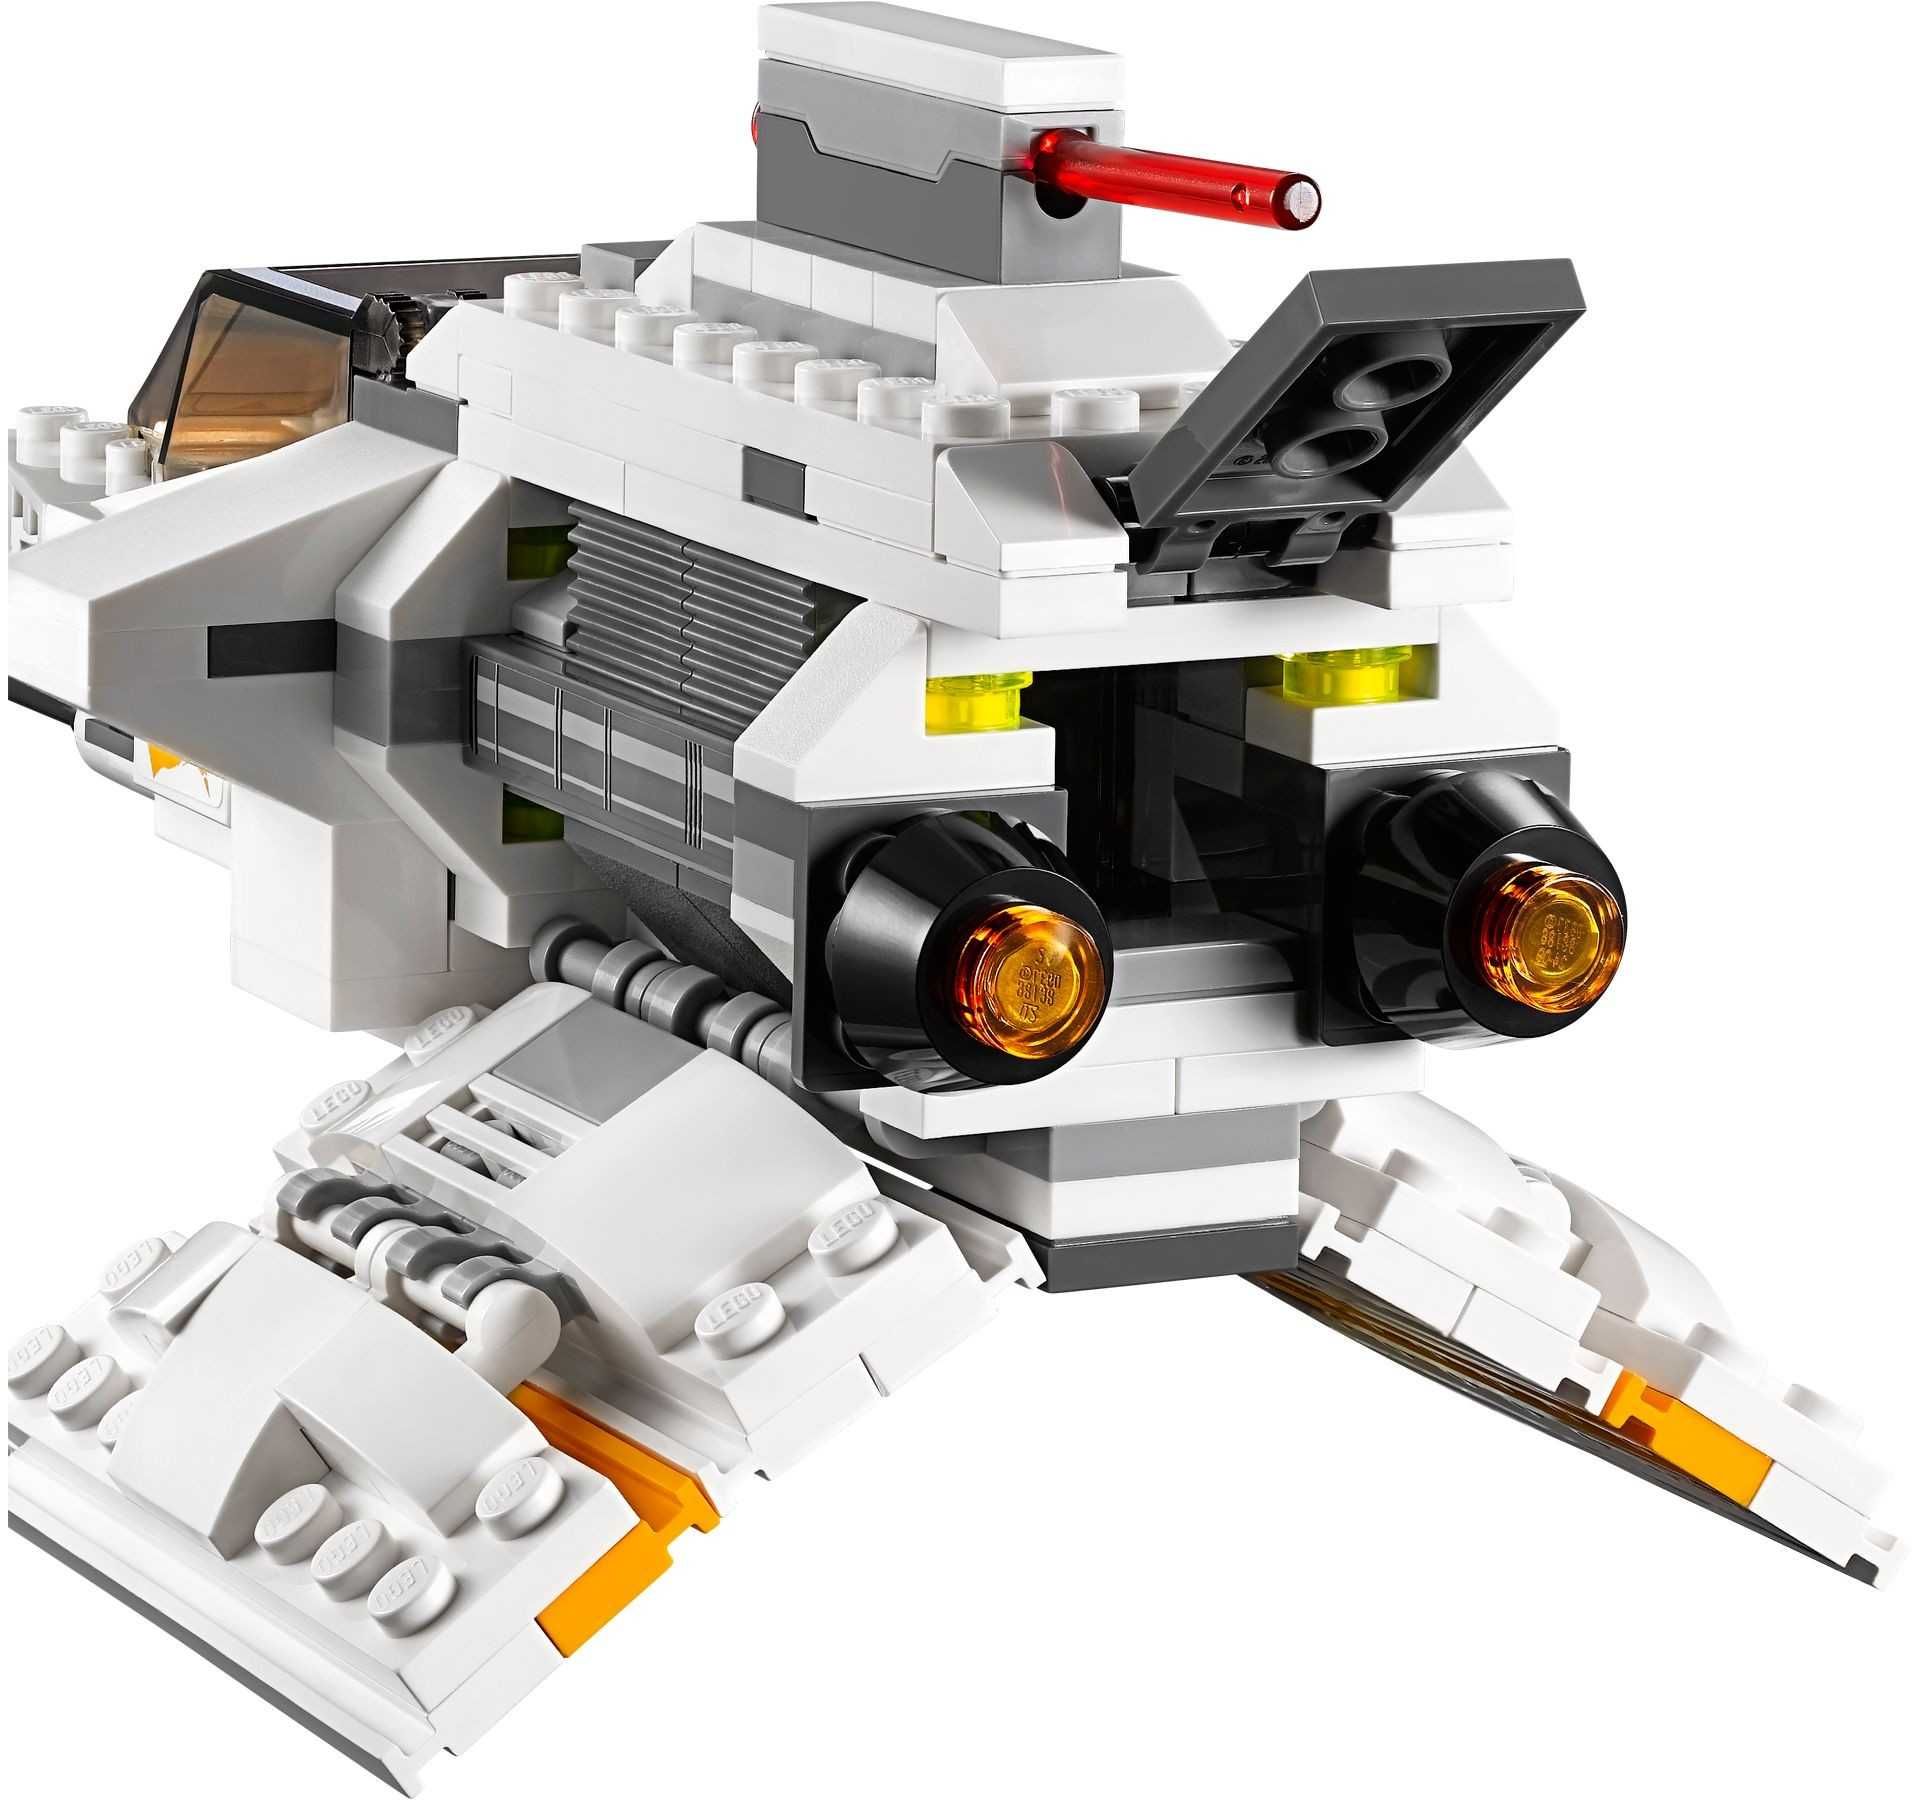 Lego Star Wars REBELS 75048 : The Phantom - set de colectie - EZRA